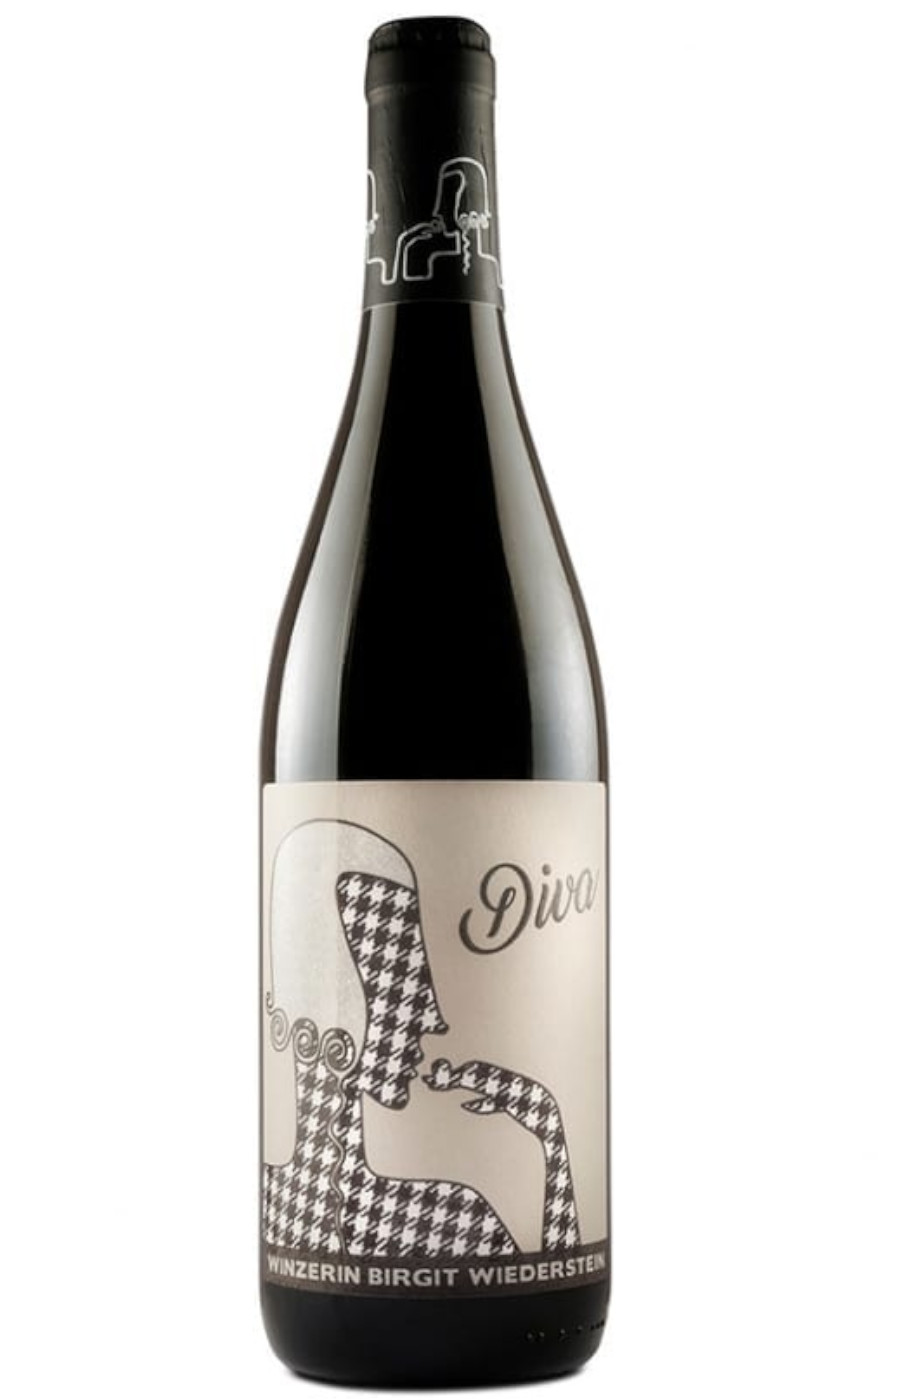 Pinot noir 'Diva' Wiederstein